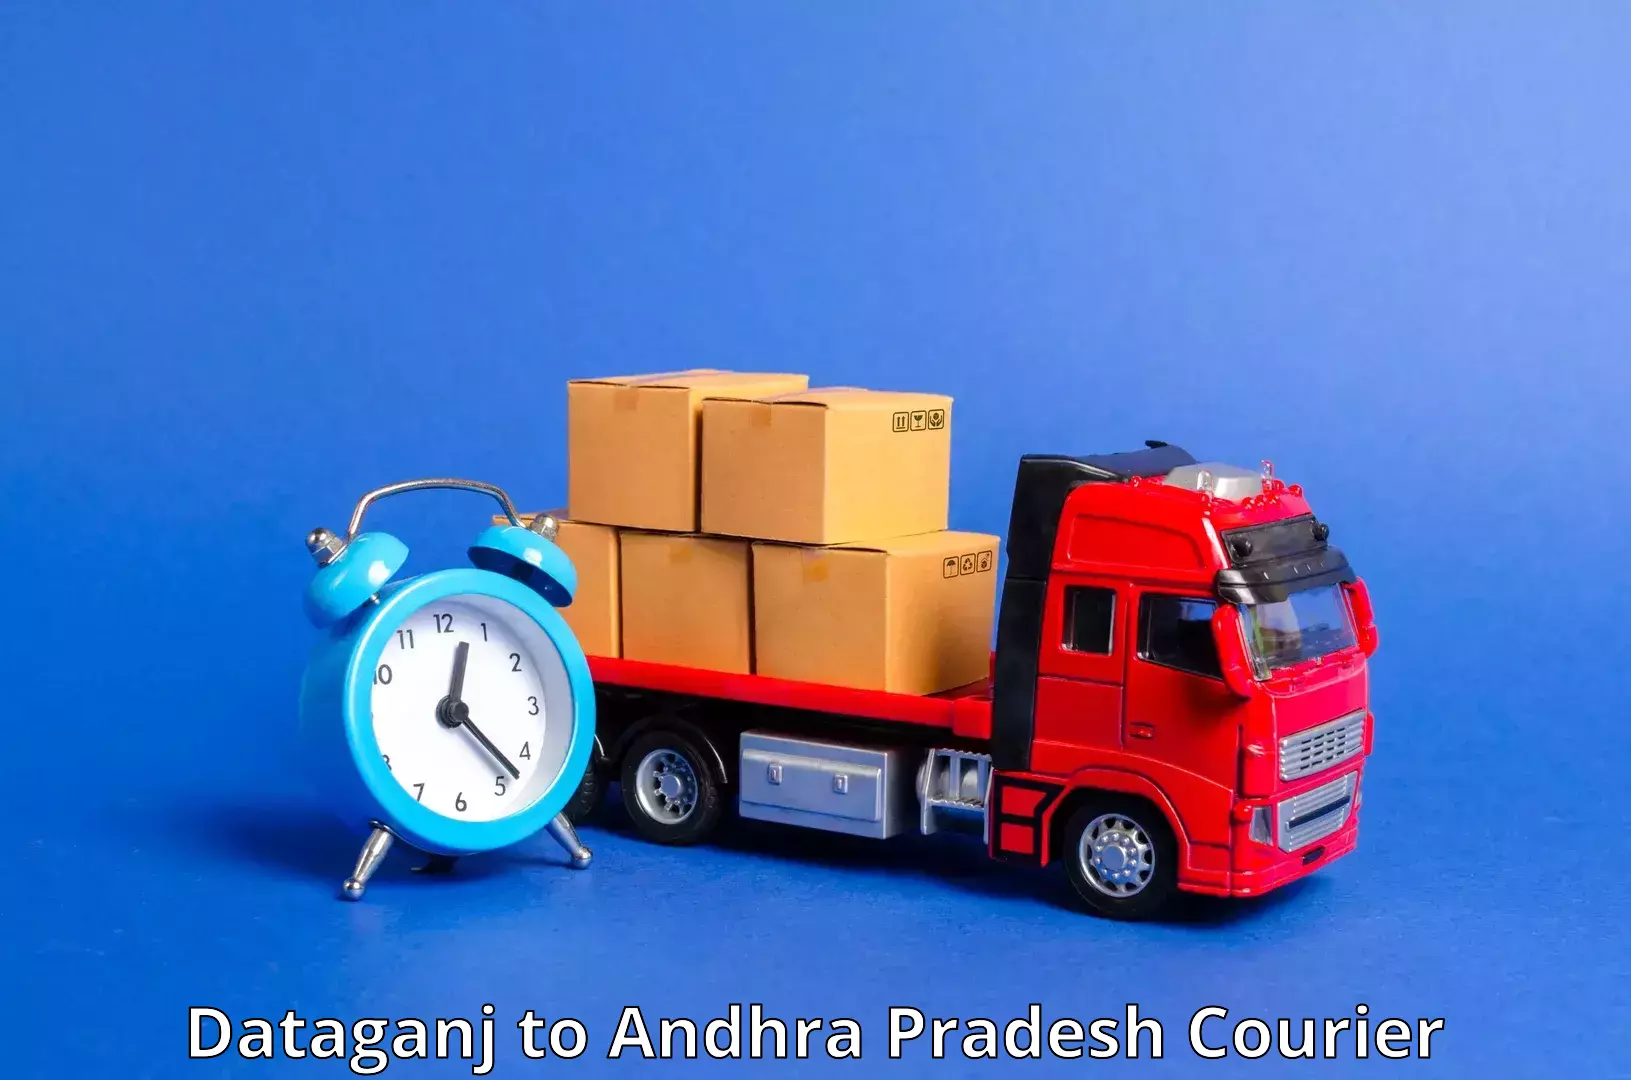 Flexible shipping options Dataganj to Bheemunipatnam